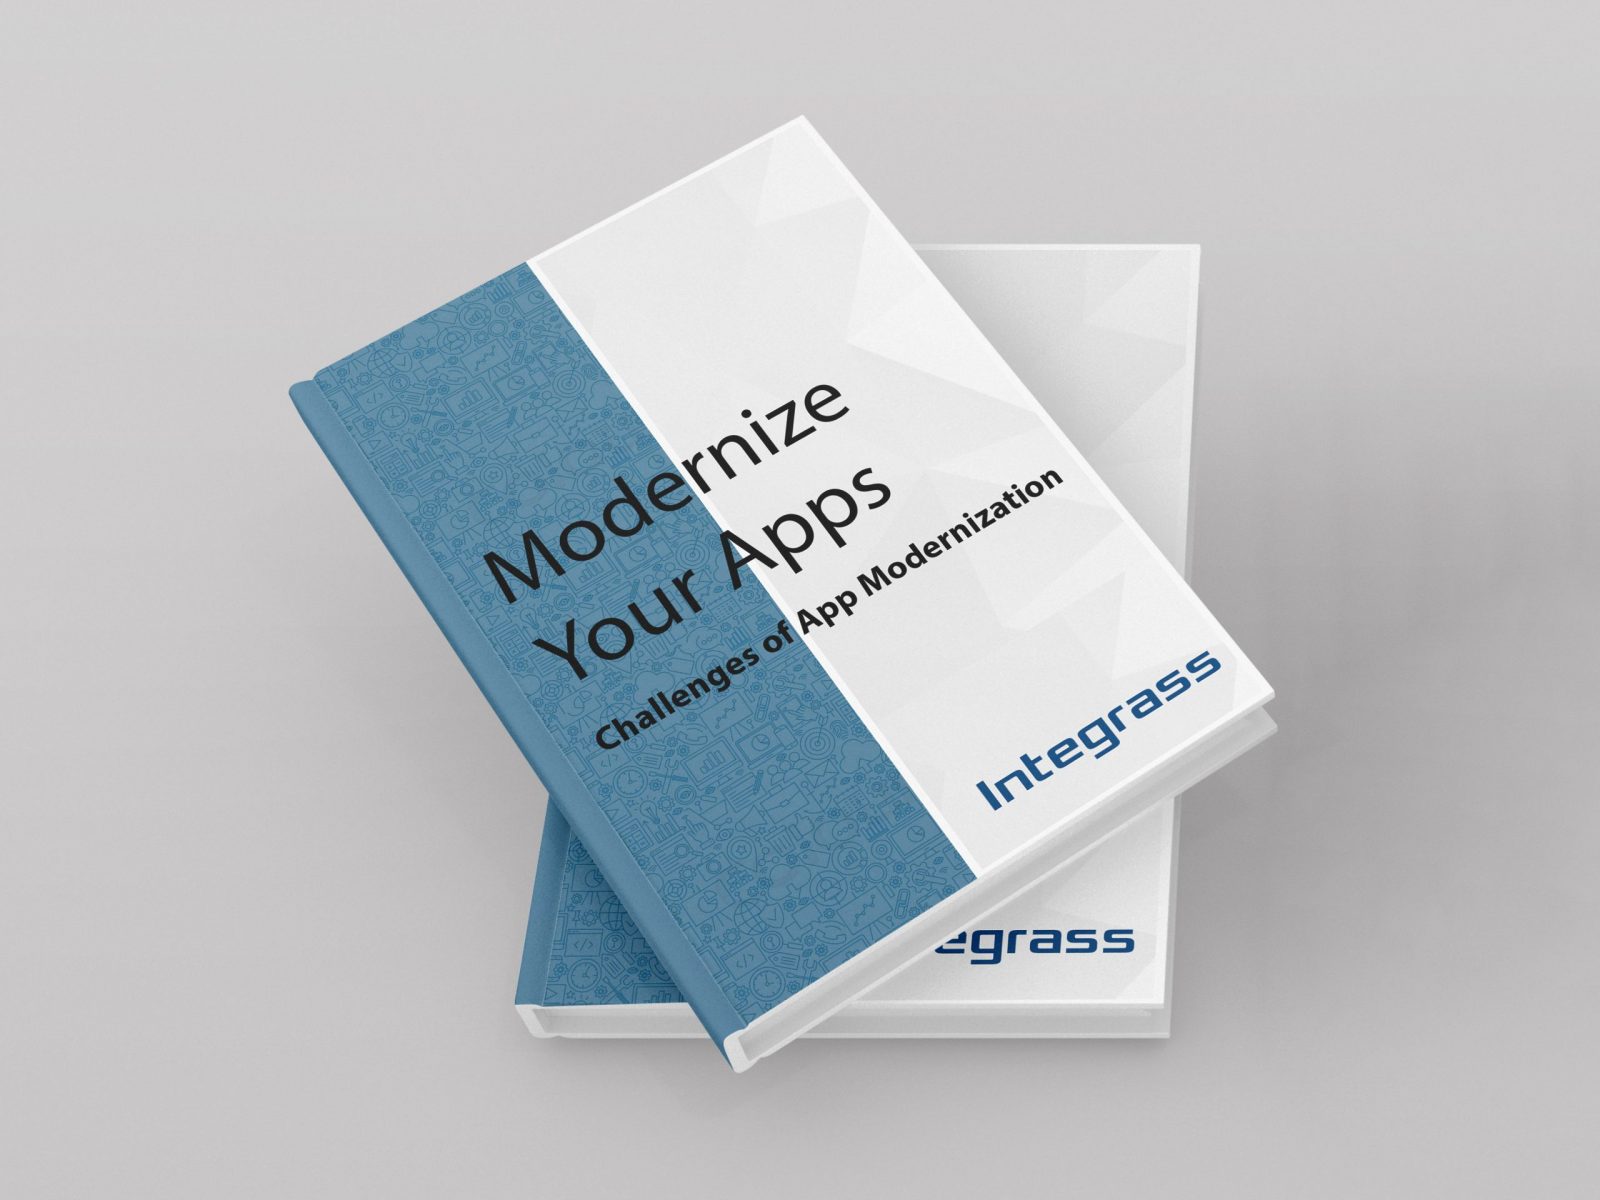 Integrass-App-Modernization